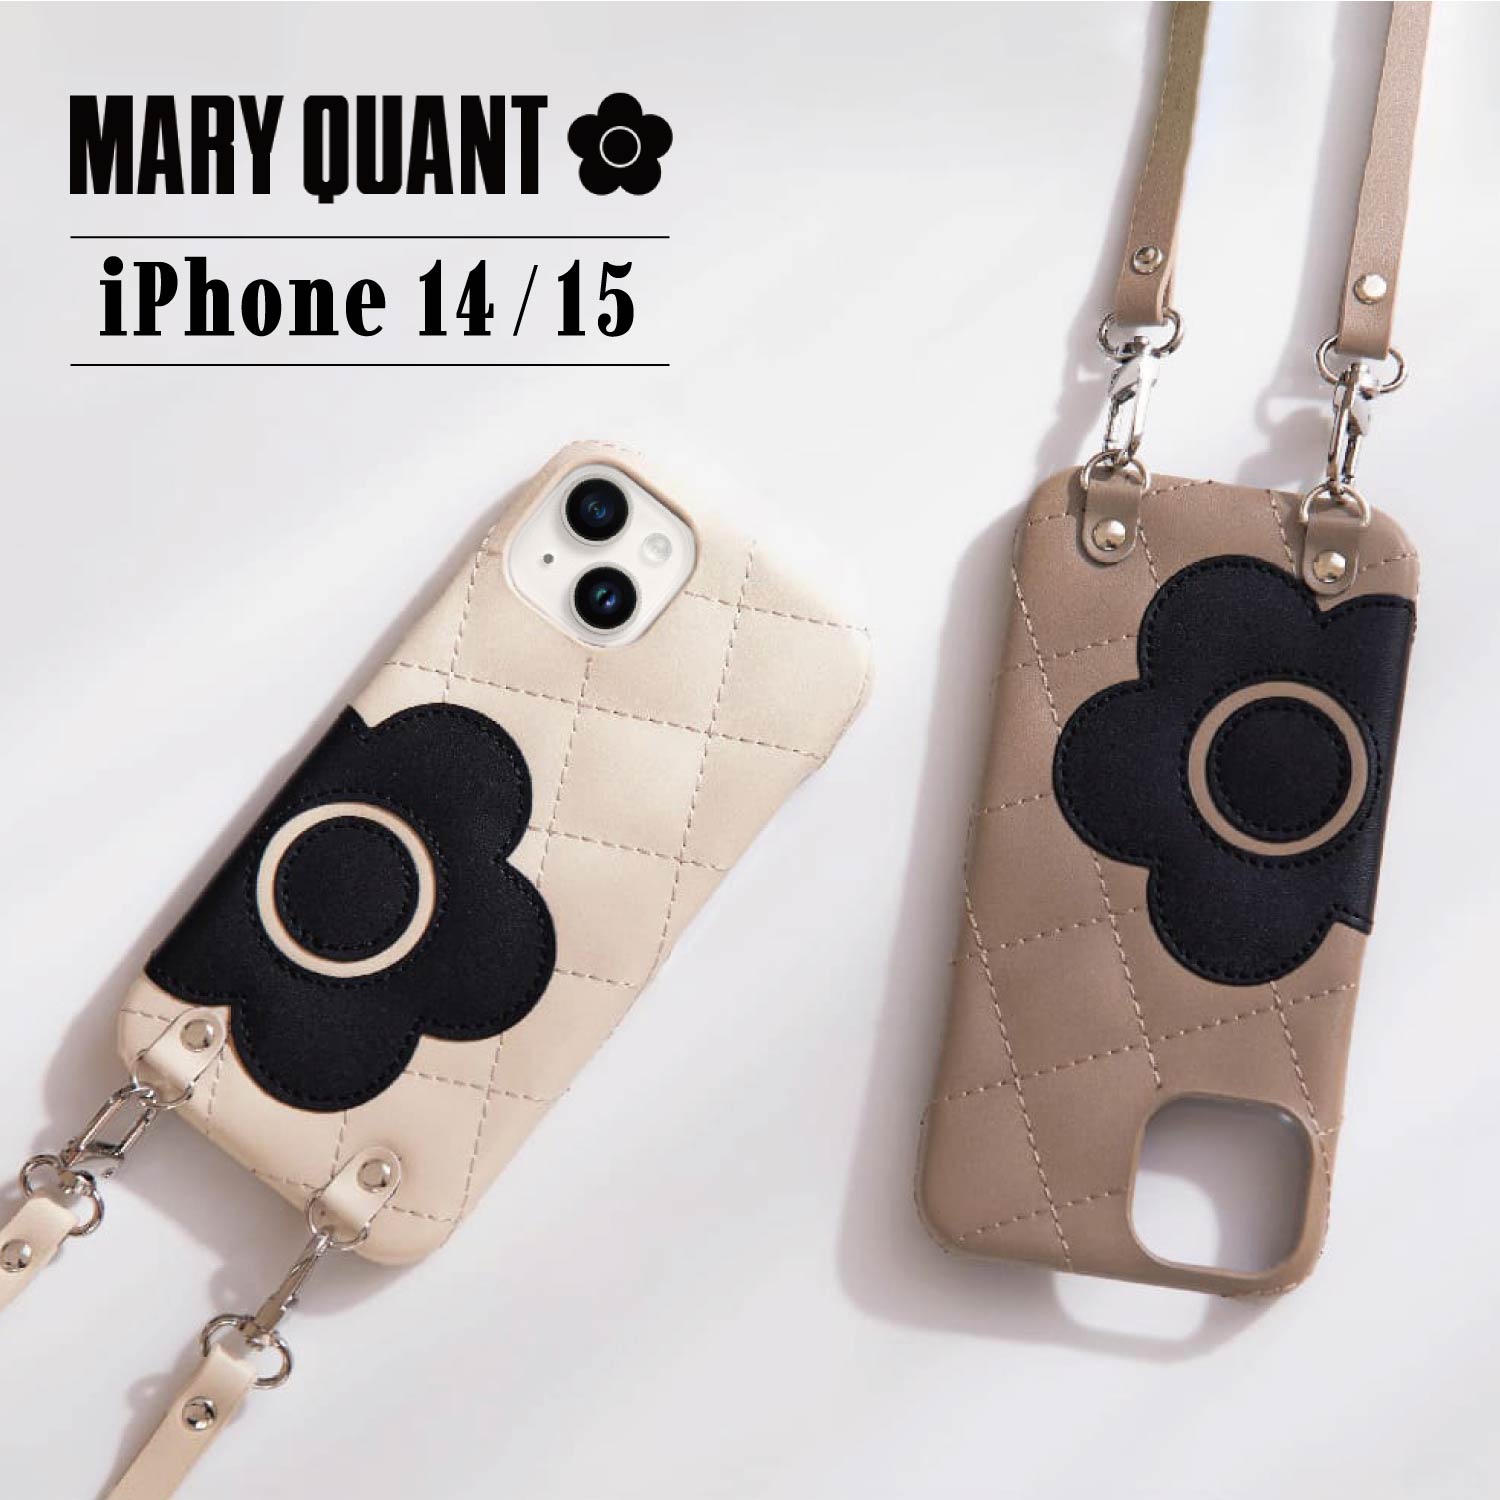 マリークヮント スマホショルダー レディース マリークヮント MARY QUANT iPhone 15 14 ケース スマホケース スマホショルダー 携帯 レディース PU QUILT LEATHER NEW SLING CASE ブラック ホワイト グレー ブラウン ピンク 黒 白 母の日